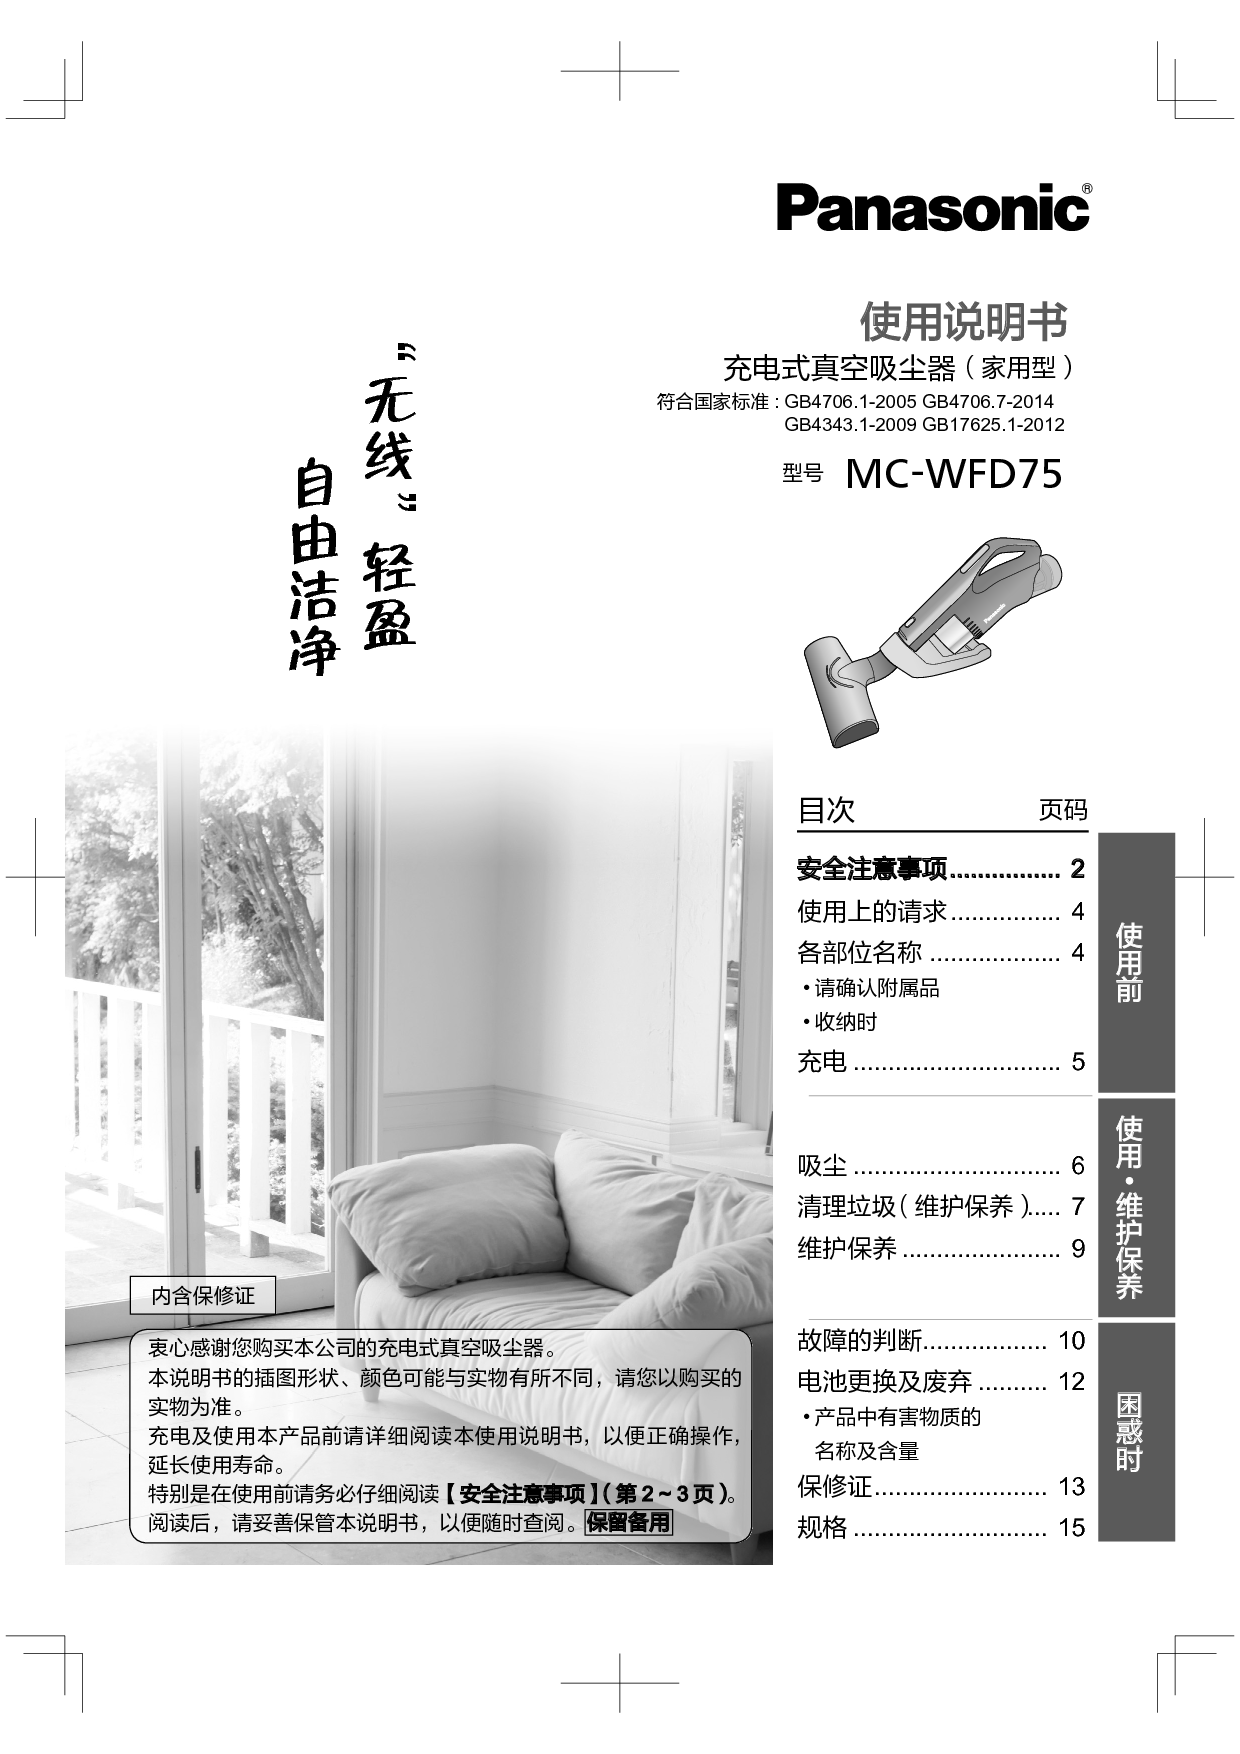 松下 Panasonic MC-WFD75 使用说明书 封面